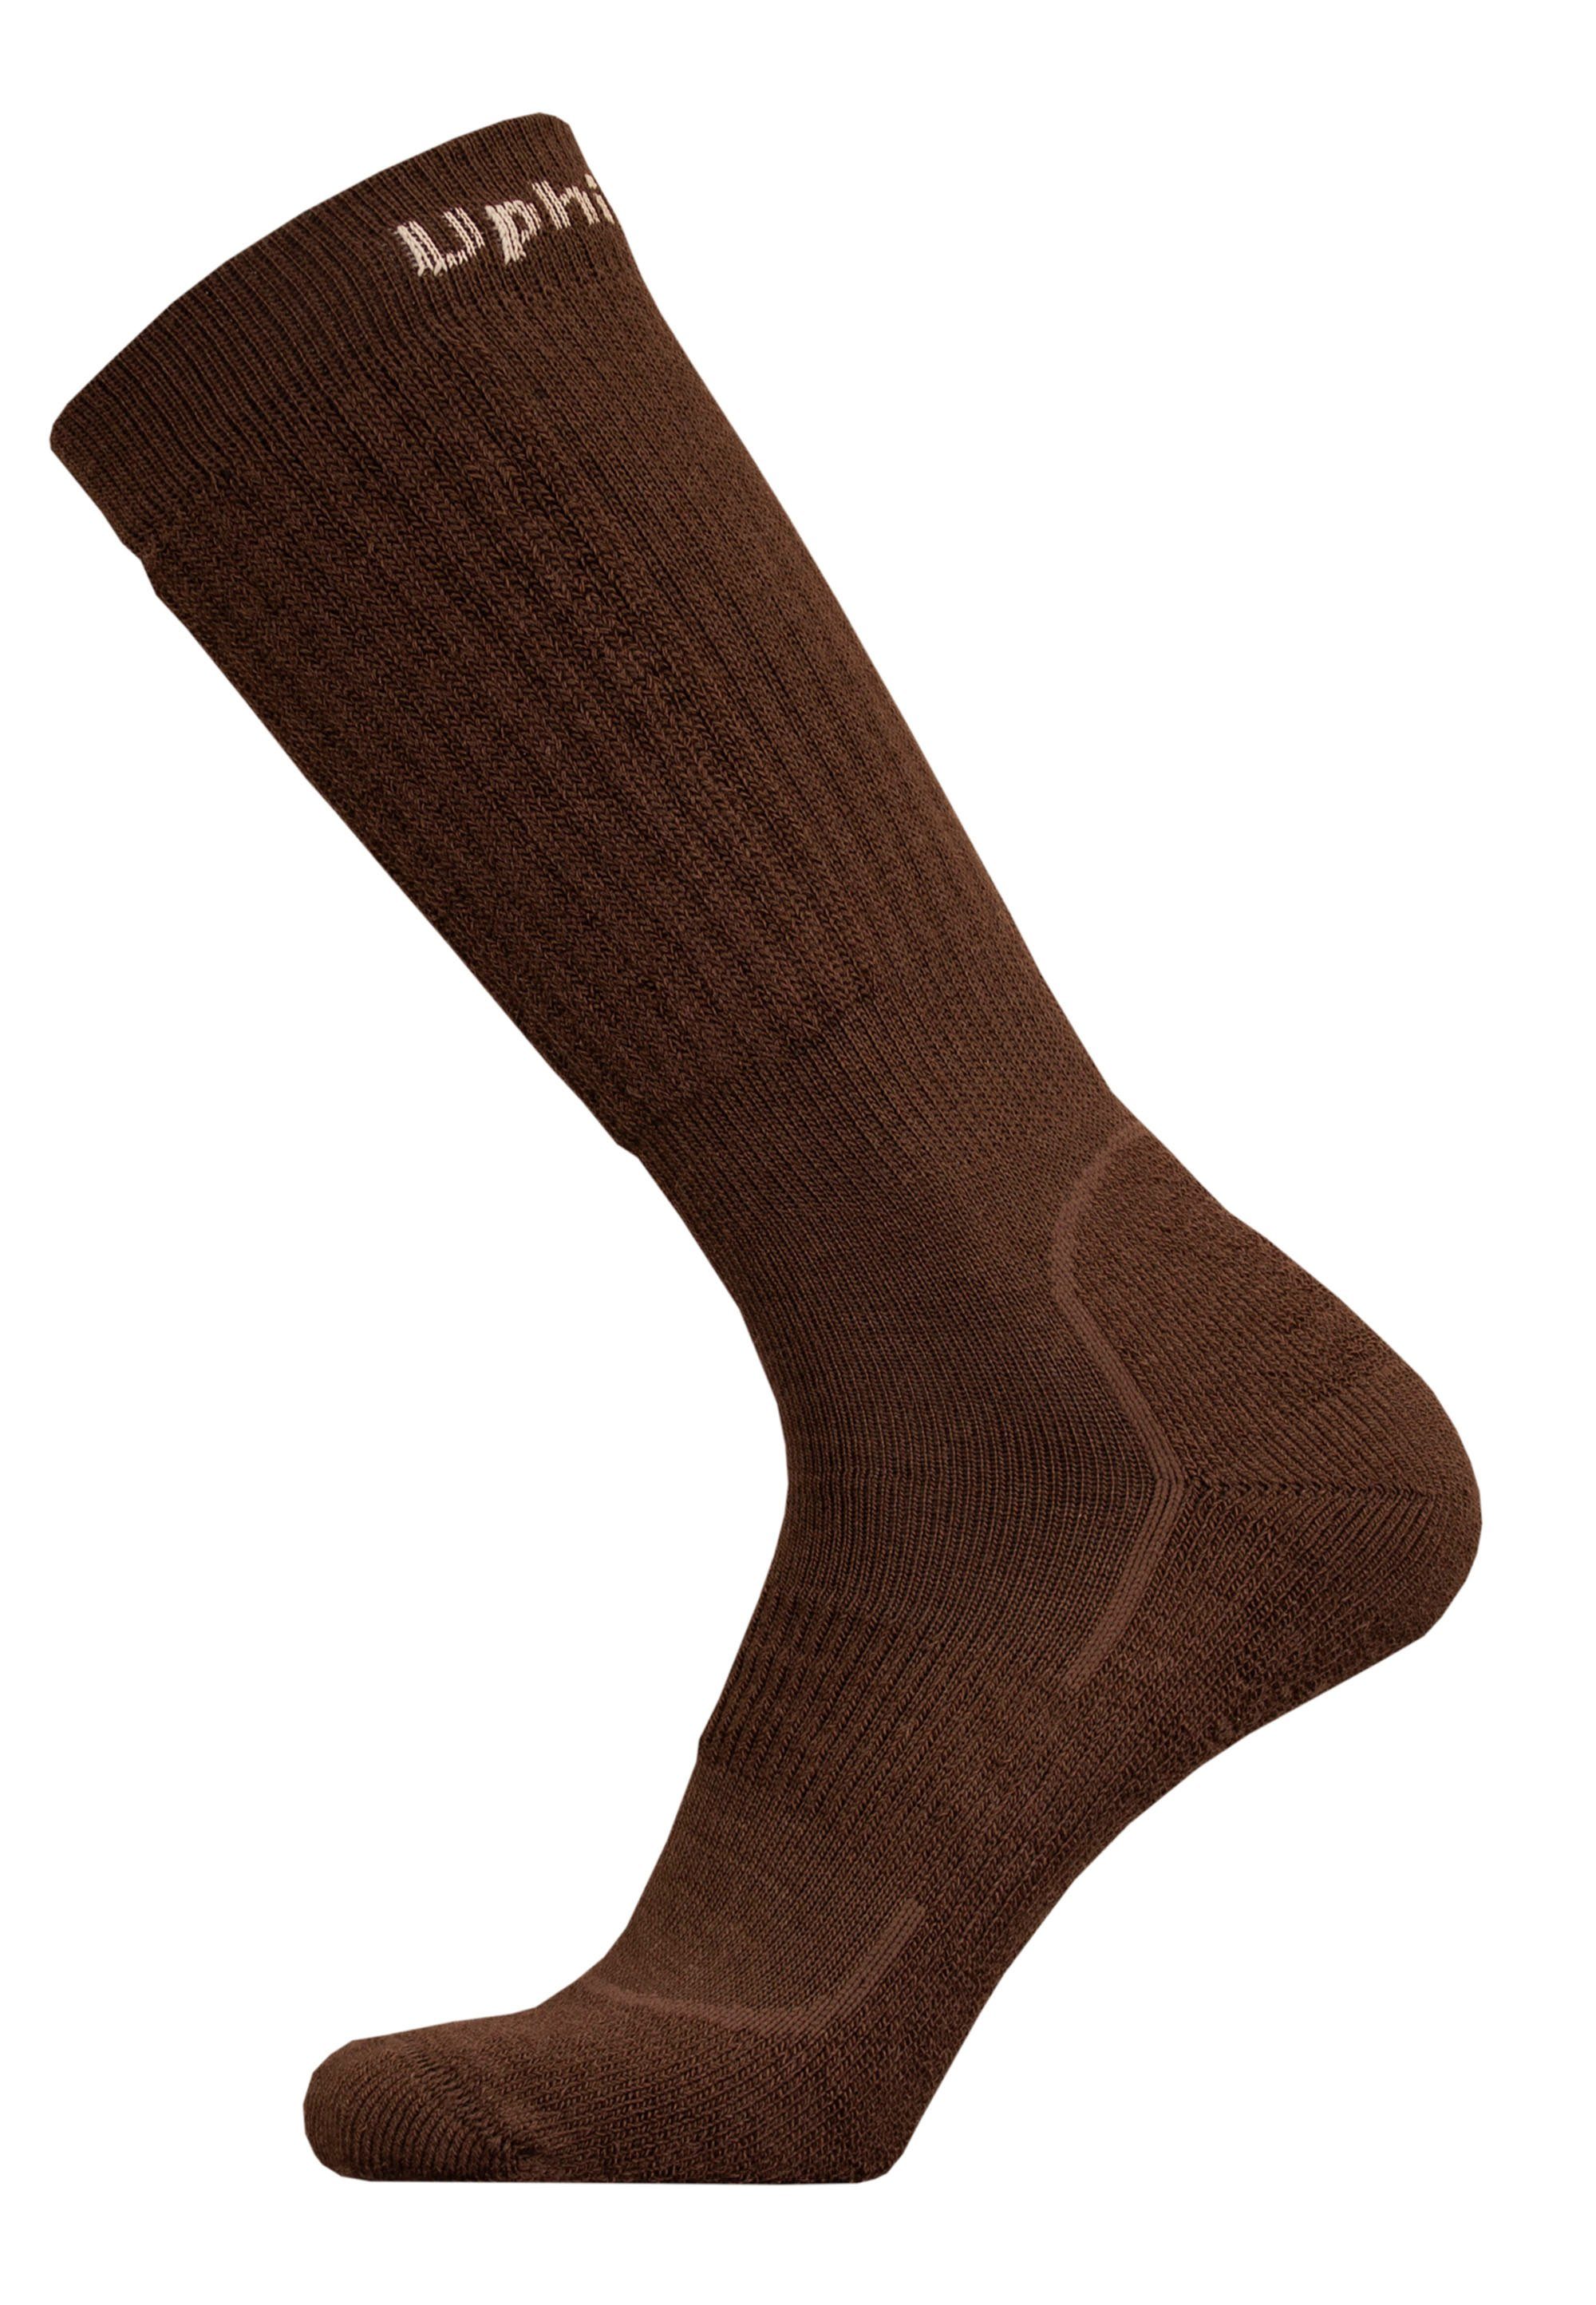 UphillSport Socken ROVA mit mehrlagiger Struktur braun